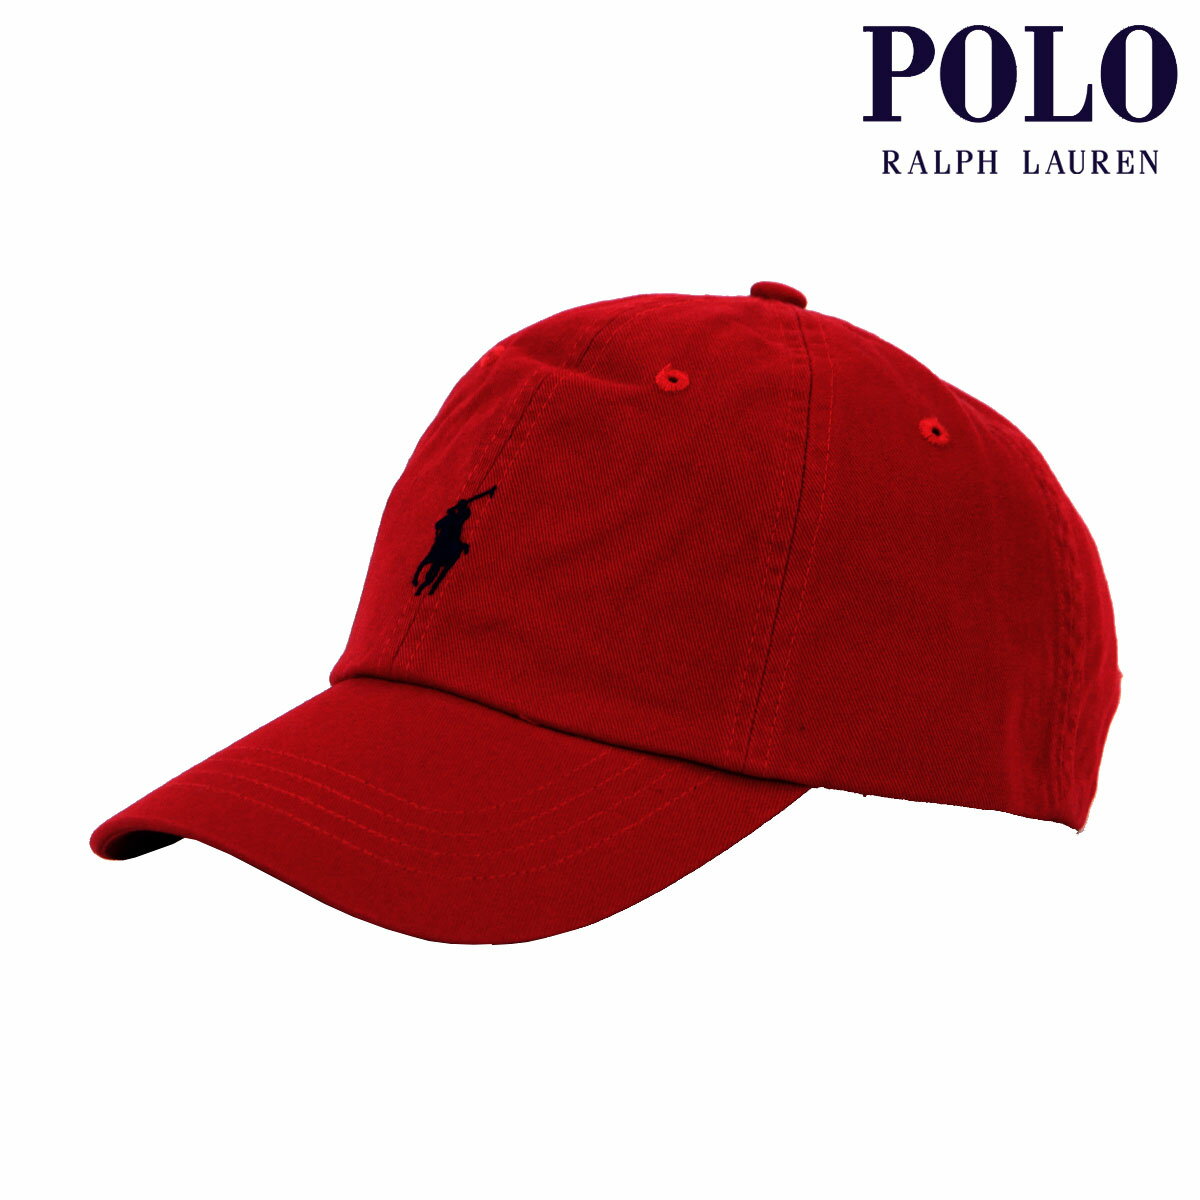 ポロ ラルフ ローレン ポロ ラルフローレン メンズ レディース キャップ 正規品 POLO RALPH LAUREN 帽子 ロゴ ポニー CLASSIC SPORTS CAP RED 710548524